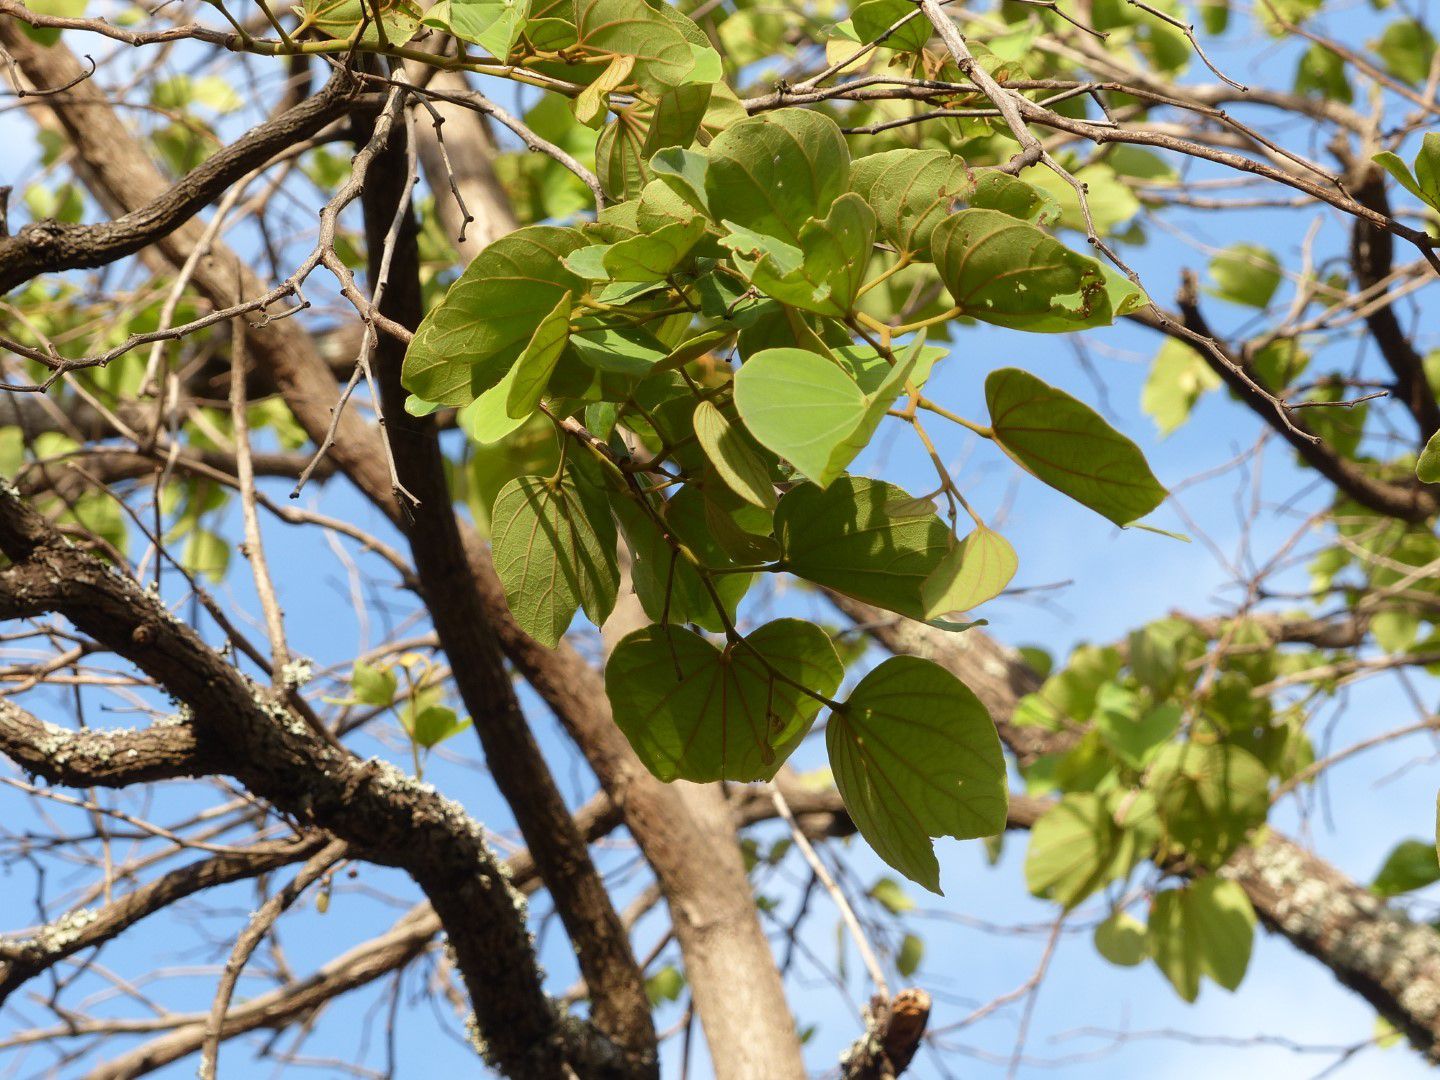 Piliostigma thonningii (Msekese) leaves